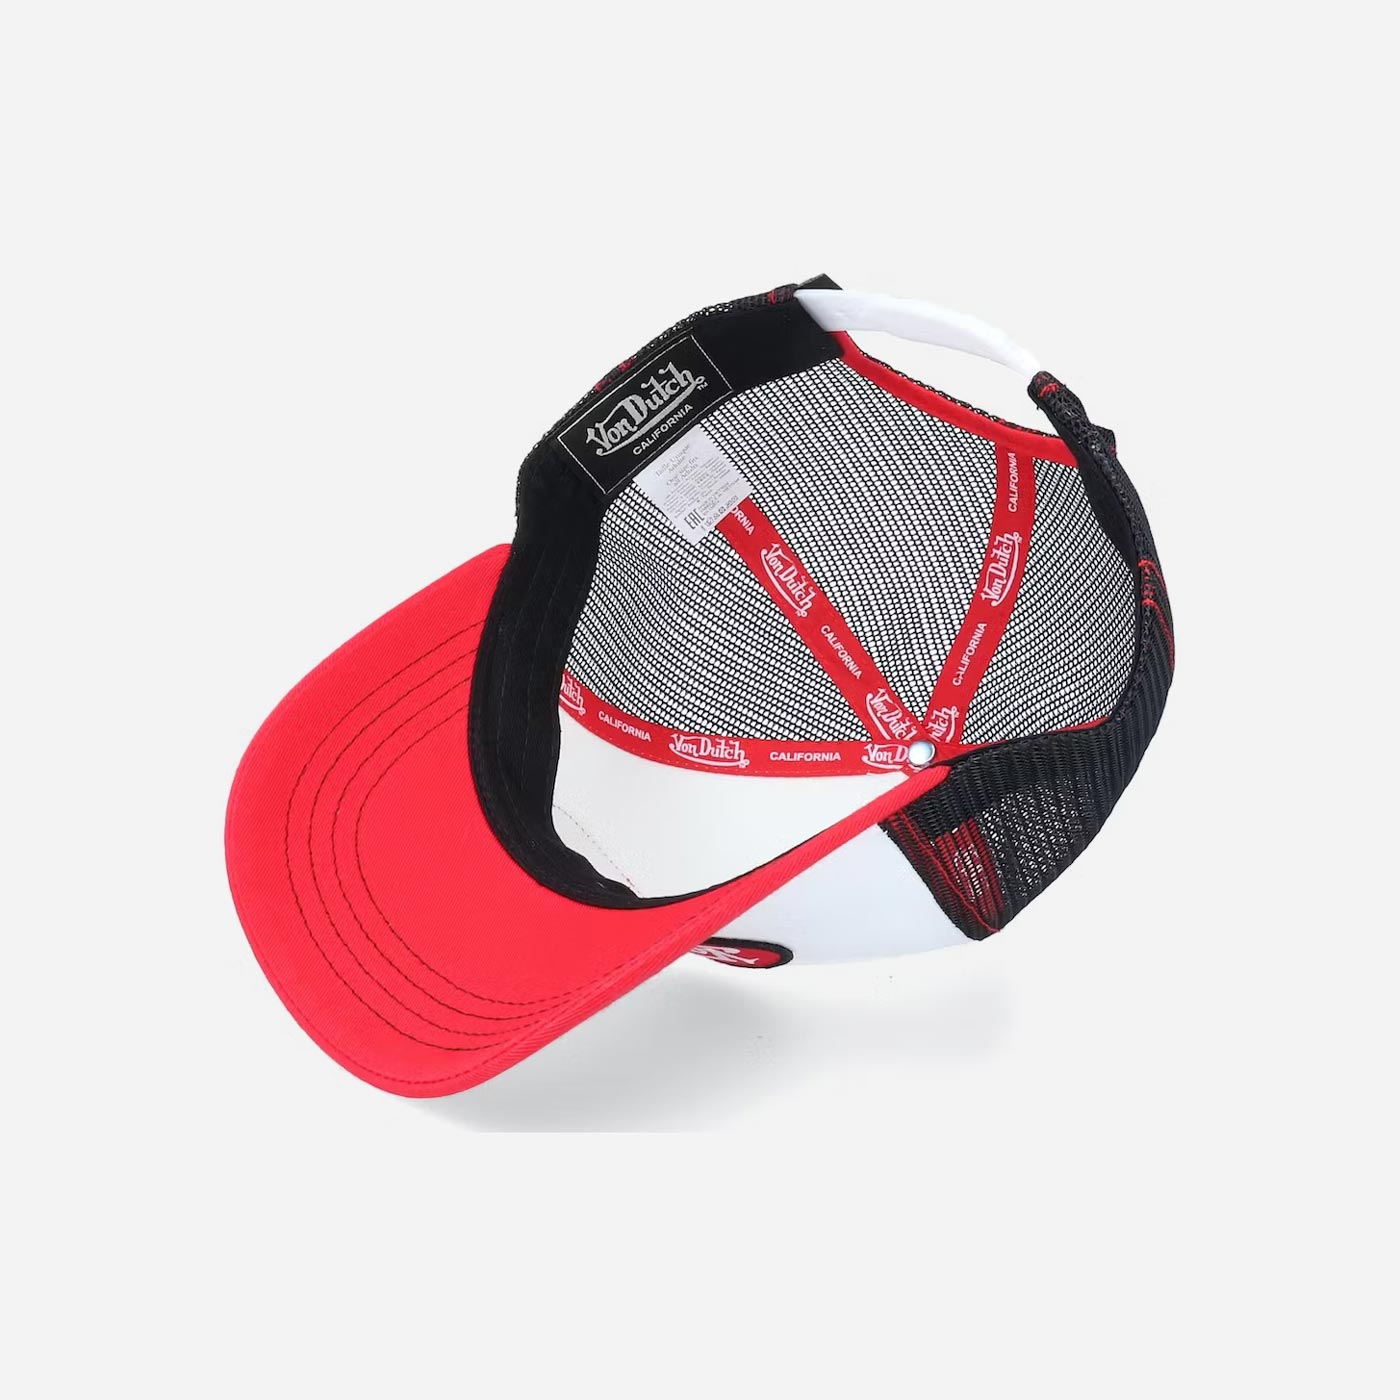 Von Dutch BBR White, Black and Red Trucker Hat